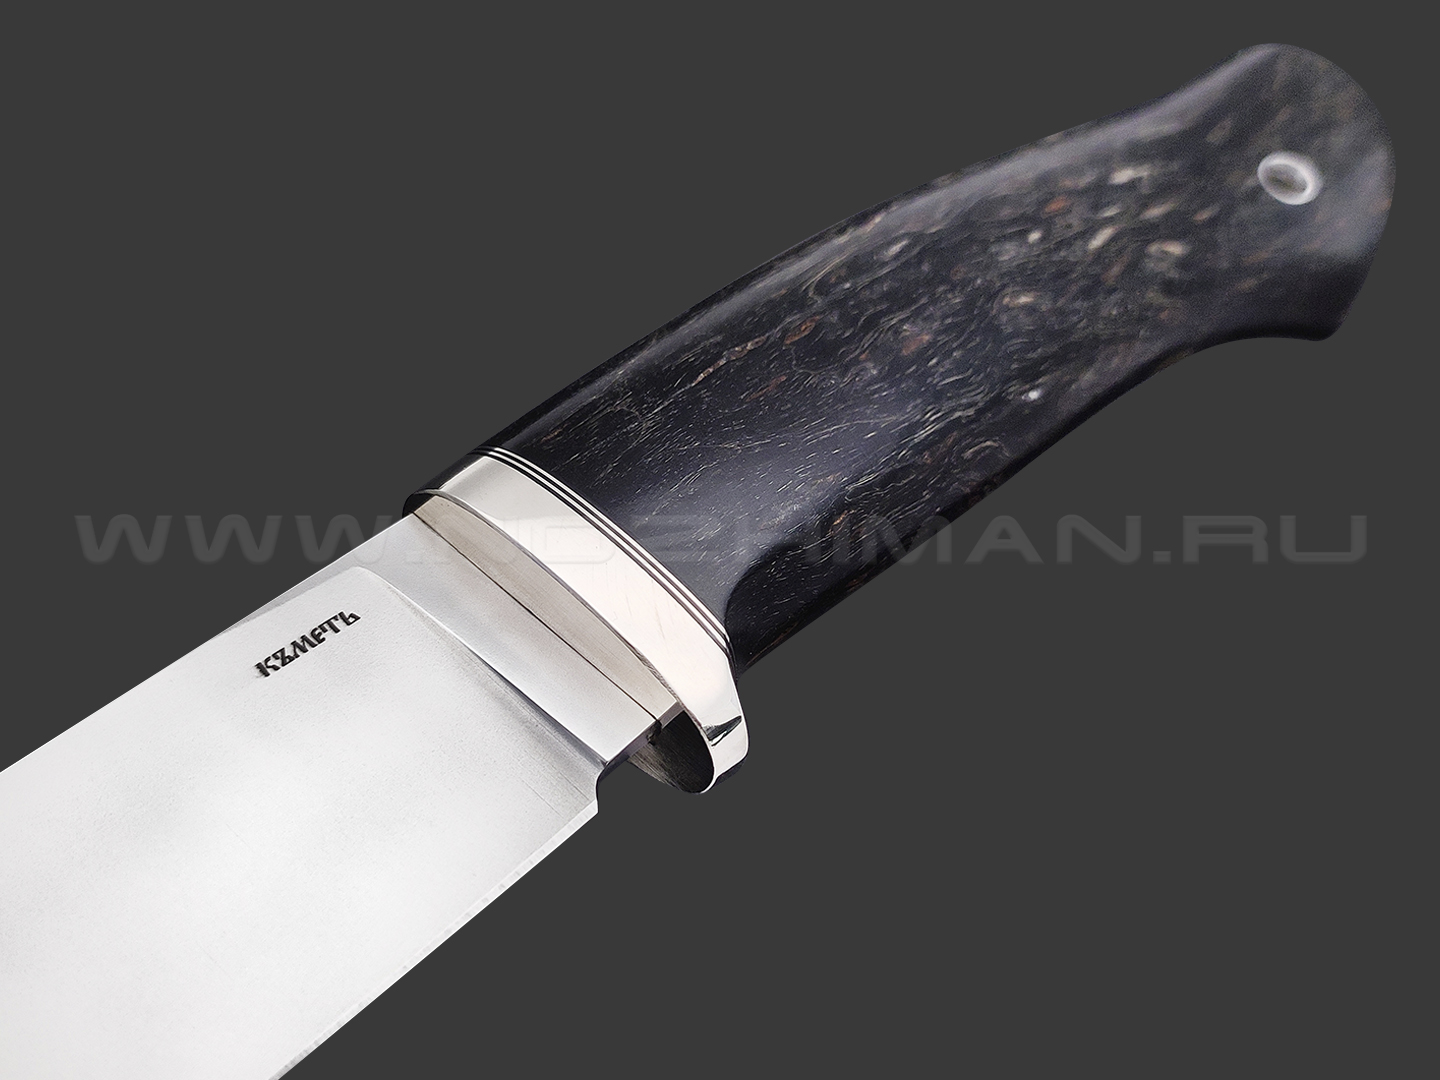 Кметь нож Панцуй сталь Bohler K340, рукоять Карельская береза черная, мельхиор